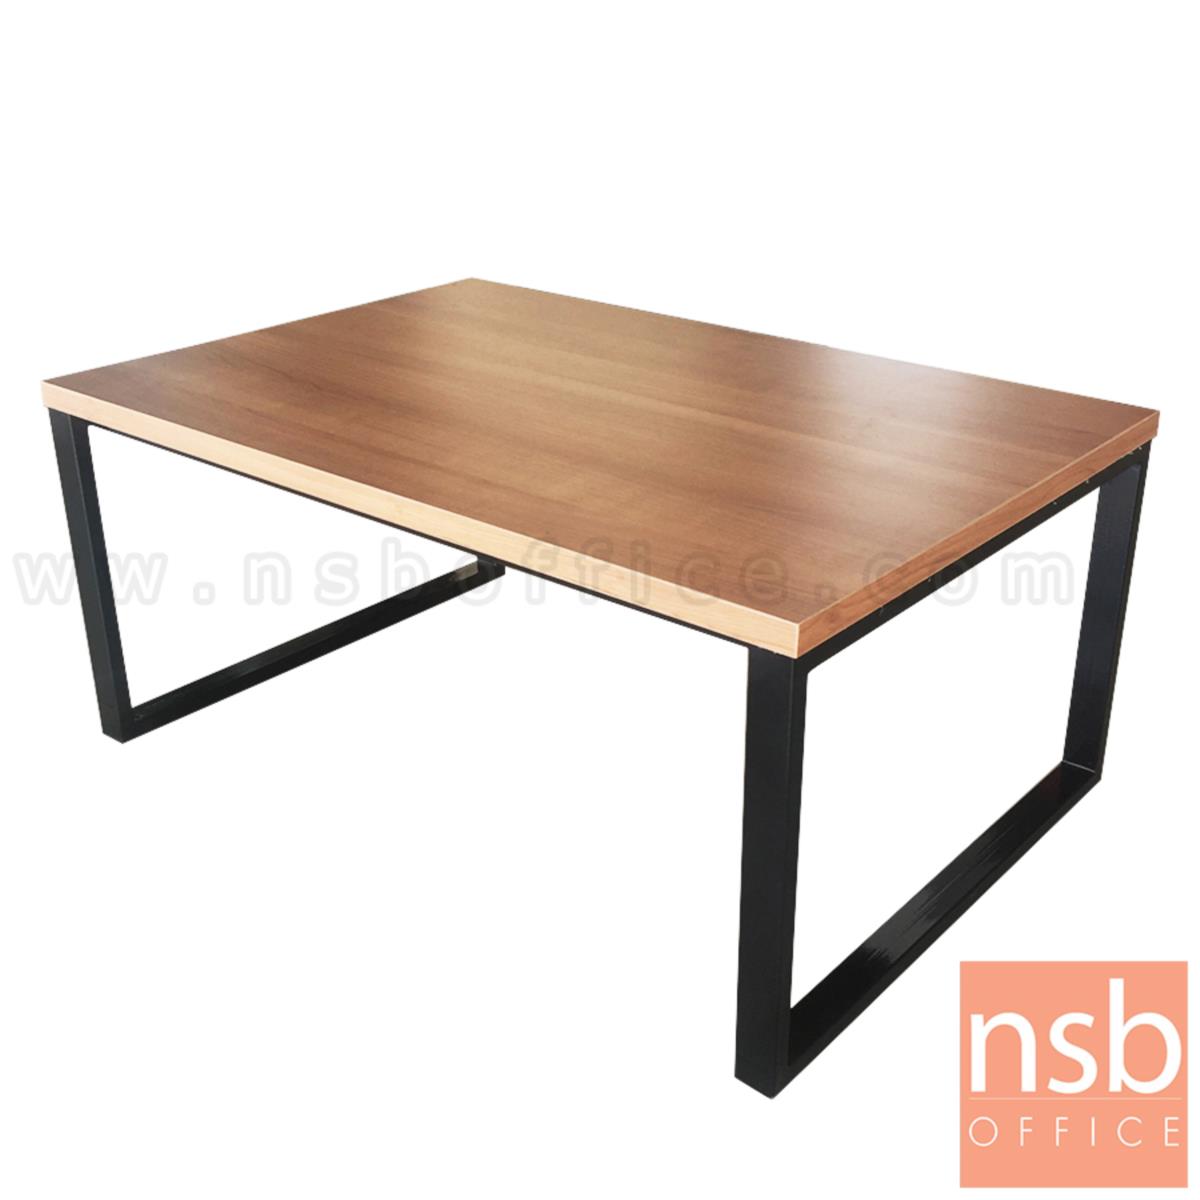 B13A185:โต๊ะกลางเมลามีน ขาเหล็กทำสี รุ่น Rainbeau (เรนโบ) ขนาด 90W cm. 